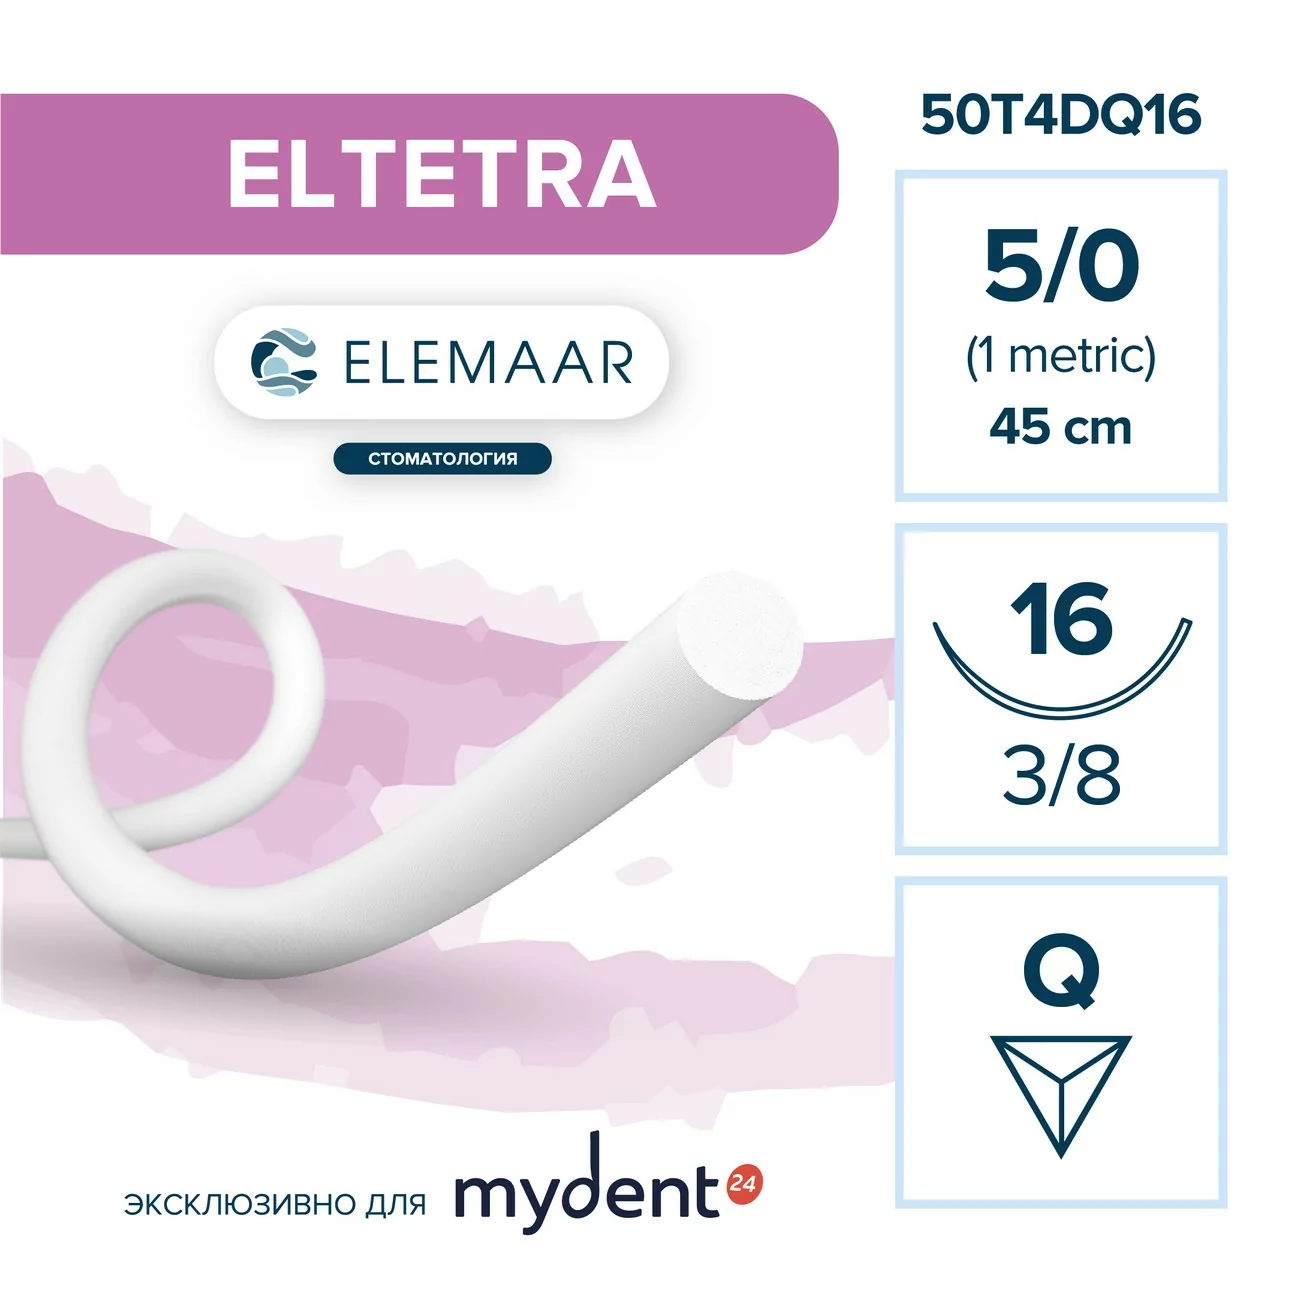 Шовный материал ELTETRA 5/0 (12 шт, 45 см, 3/8, 16 мм, обратно-режущая)